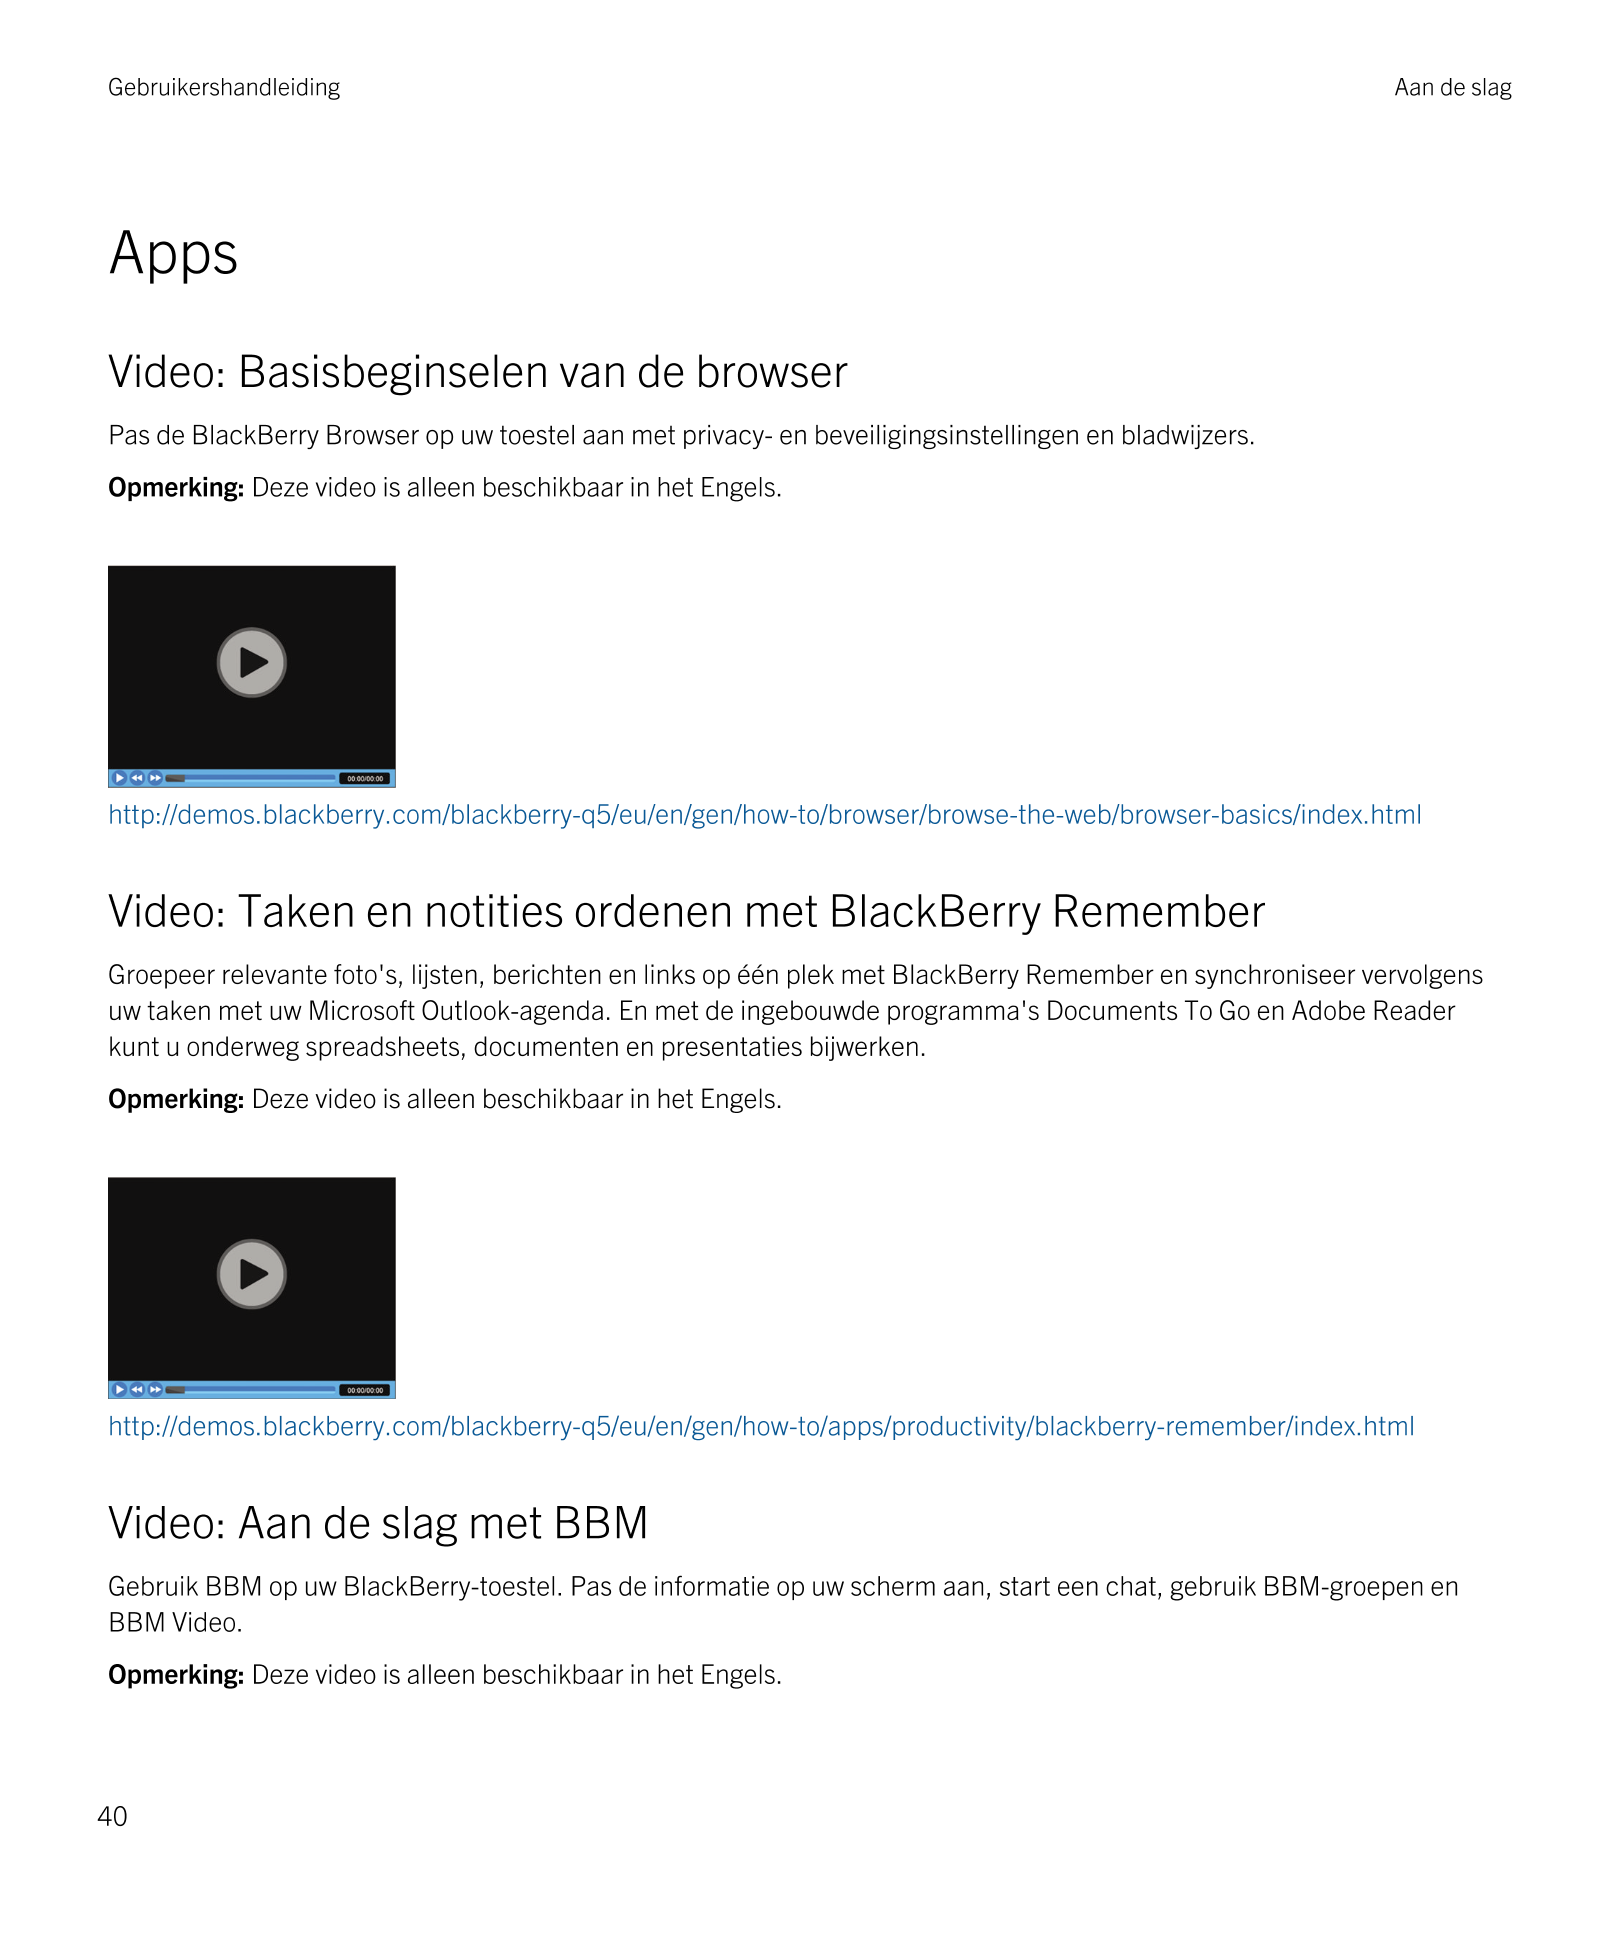 Gebruikershandleiding Aan de slag
Apps
Video: Basisbeginselen van de browser
Pas de  BlackBerry Browser op uw toestel aan met pr